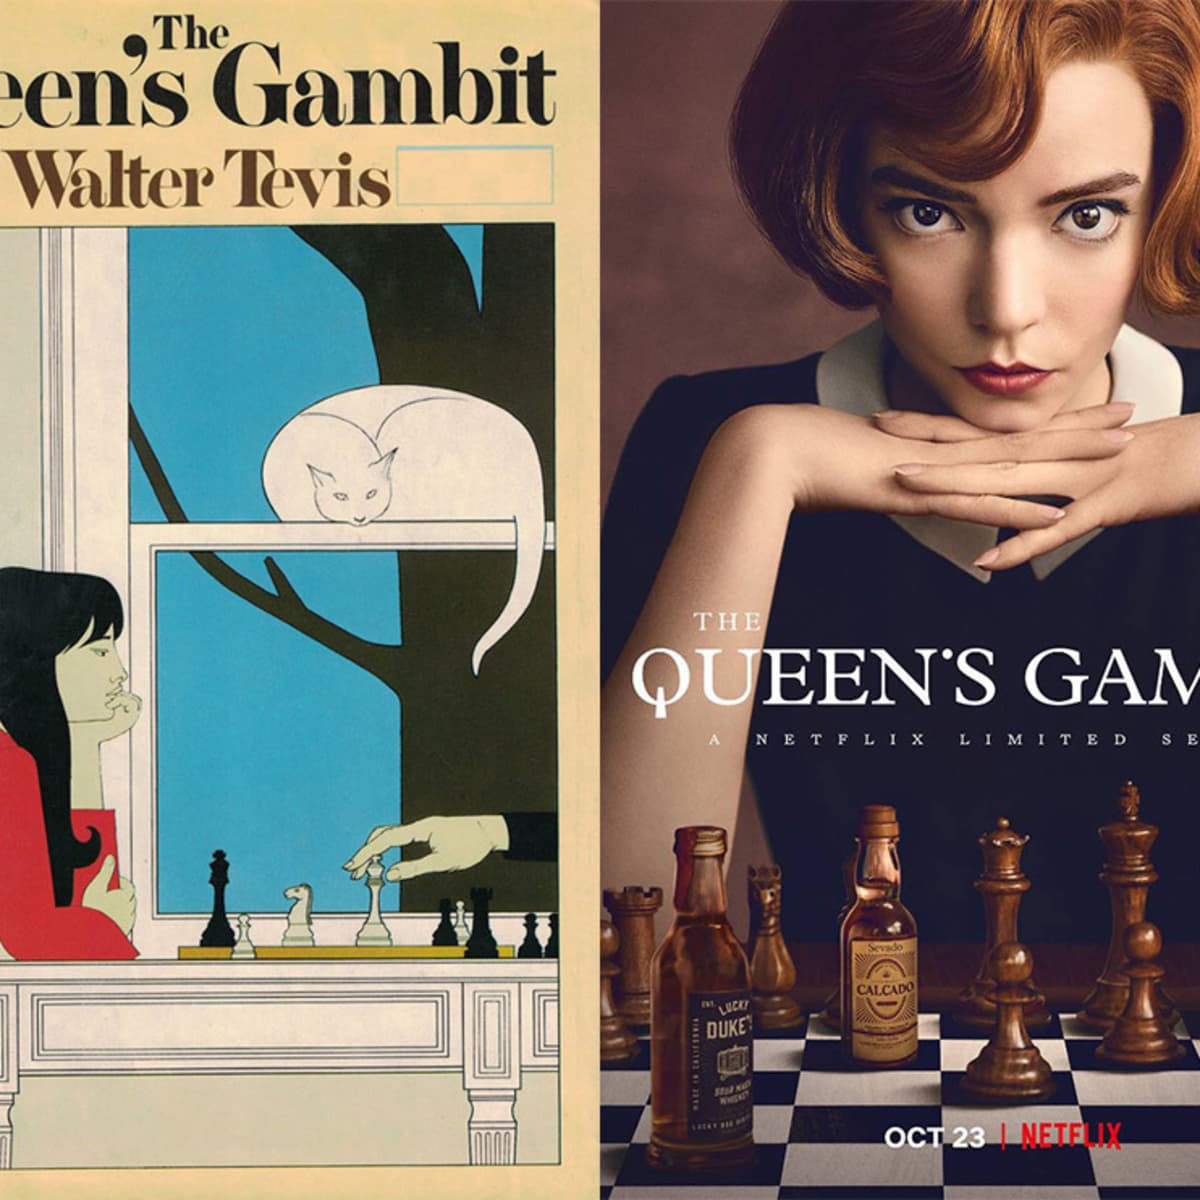 jolene icon  Queen's gambit, The queen's gambit, Queen's gambit